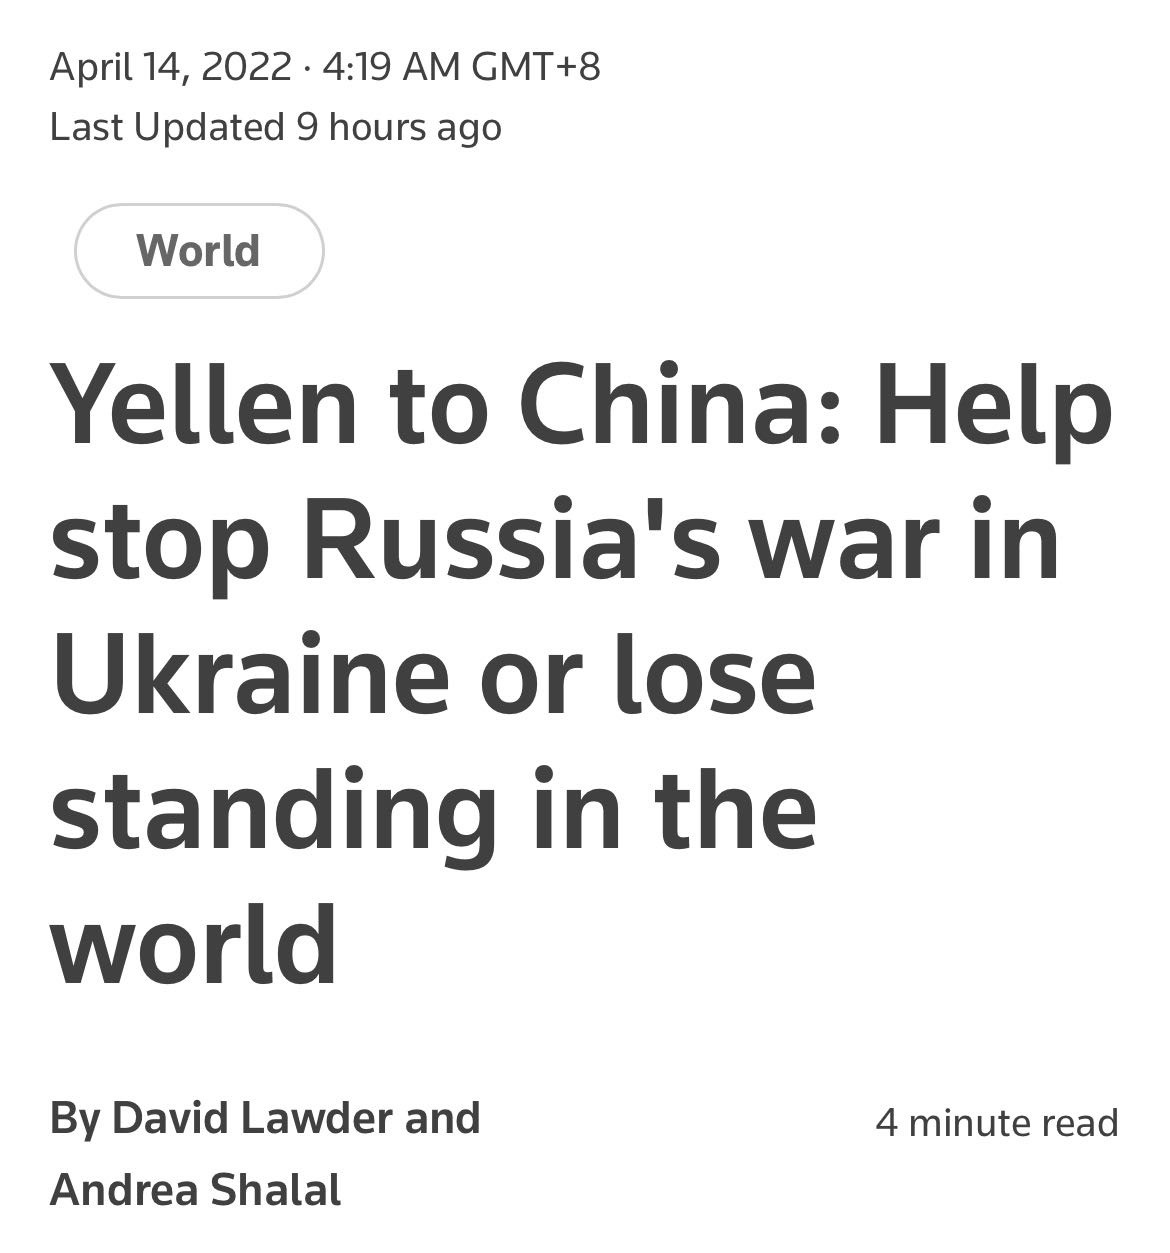 路透社：耶伦对中国说：帮助阻止俄罗斯在乌克兰的战争，否则将失去在世界上的地位